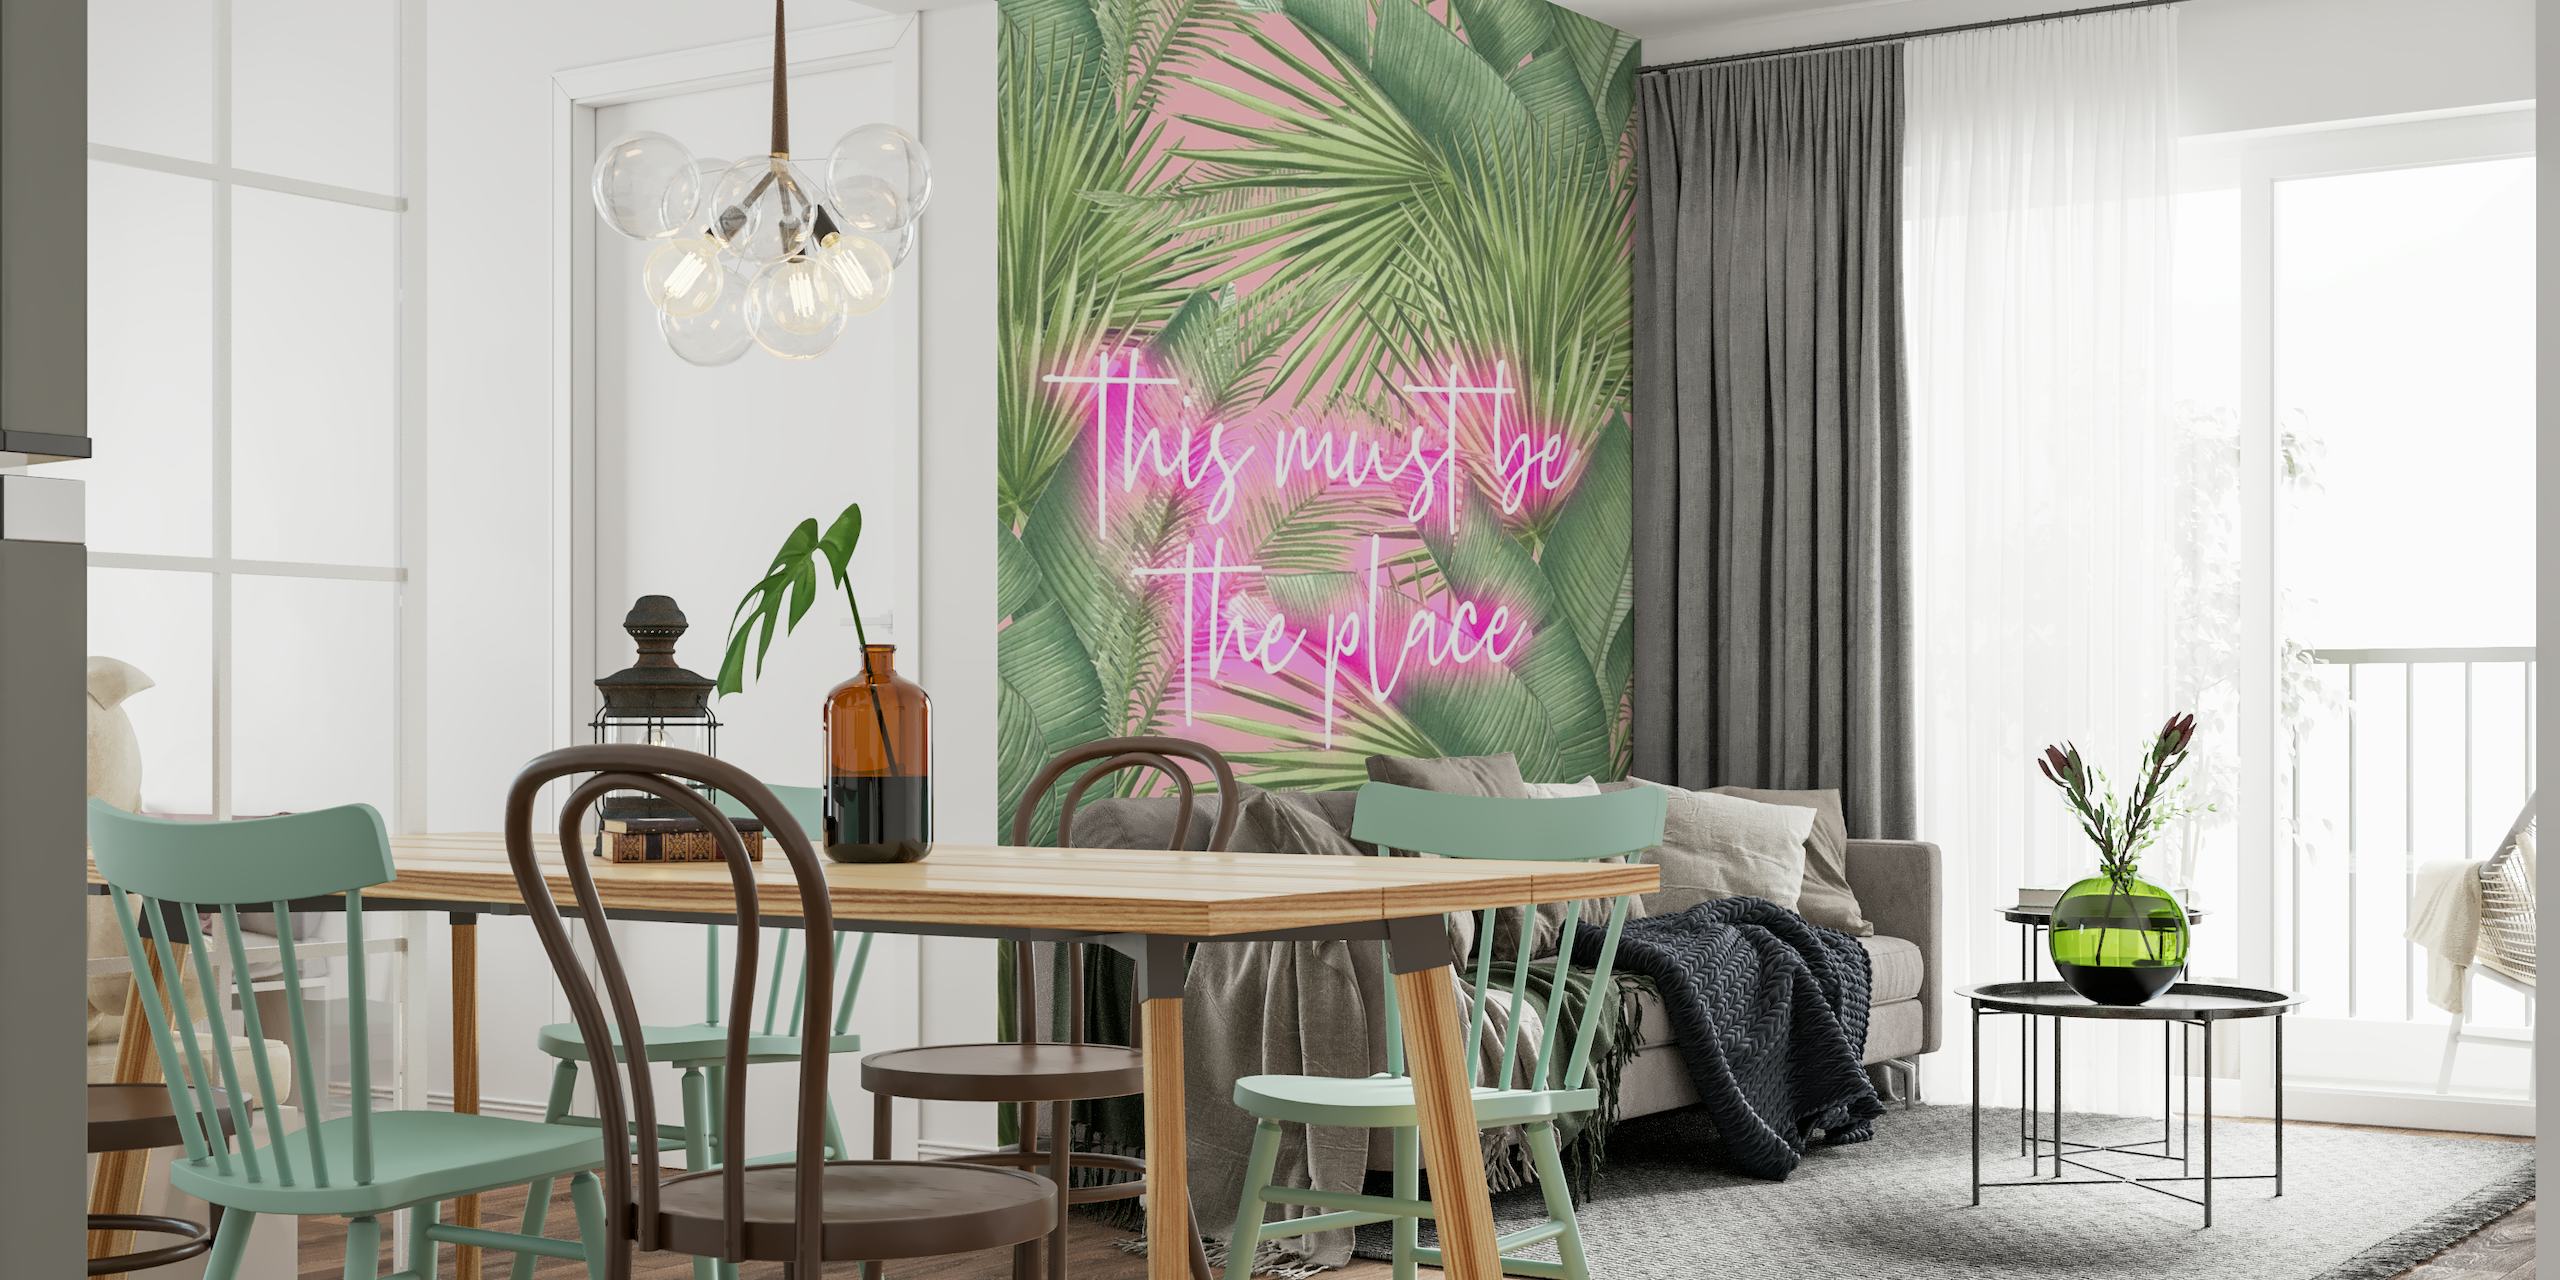 Muurschildering met neonbord met de tekst 'This must be the place' te midden van tropisch groene palmbladeren.